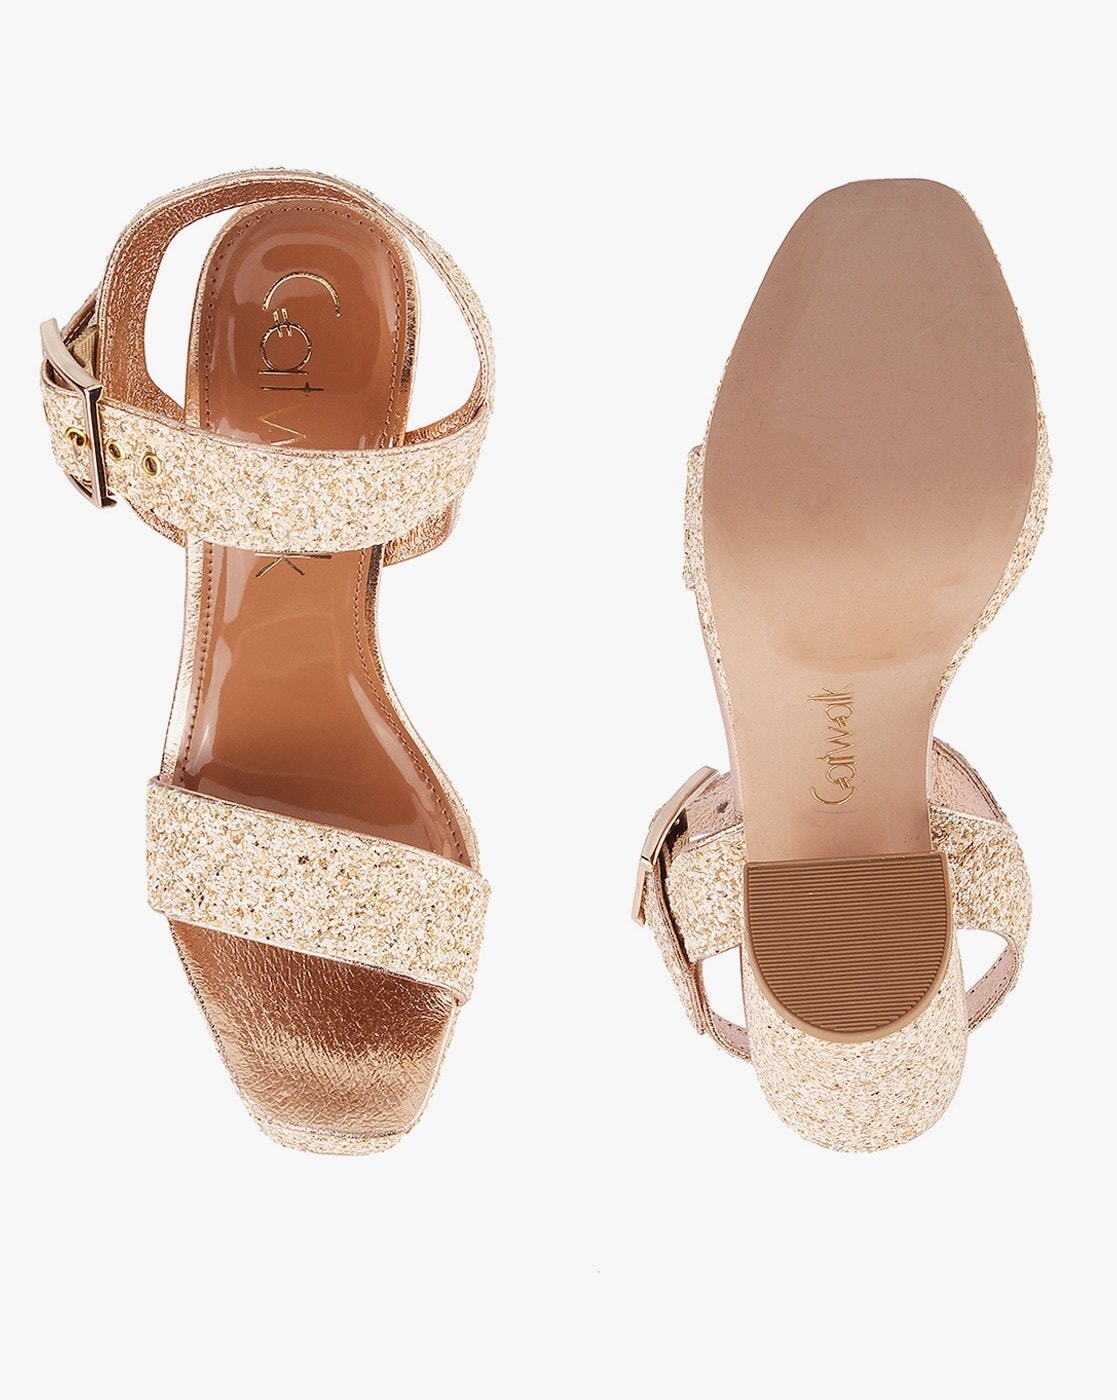 Super High Heels Double Strap Sandals Women Sexy Nightclub Catwalk Stiletto  Shoe | eBay